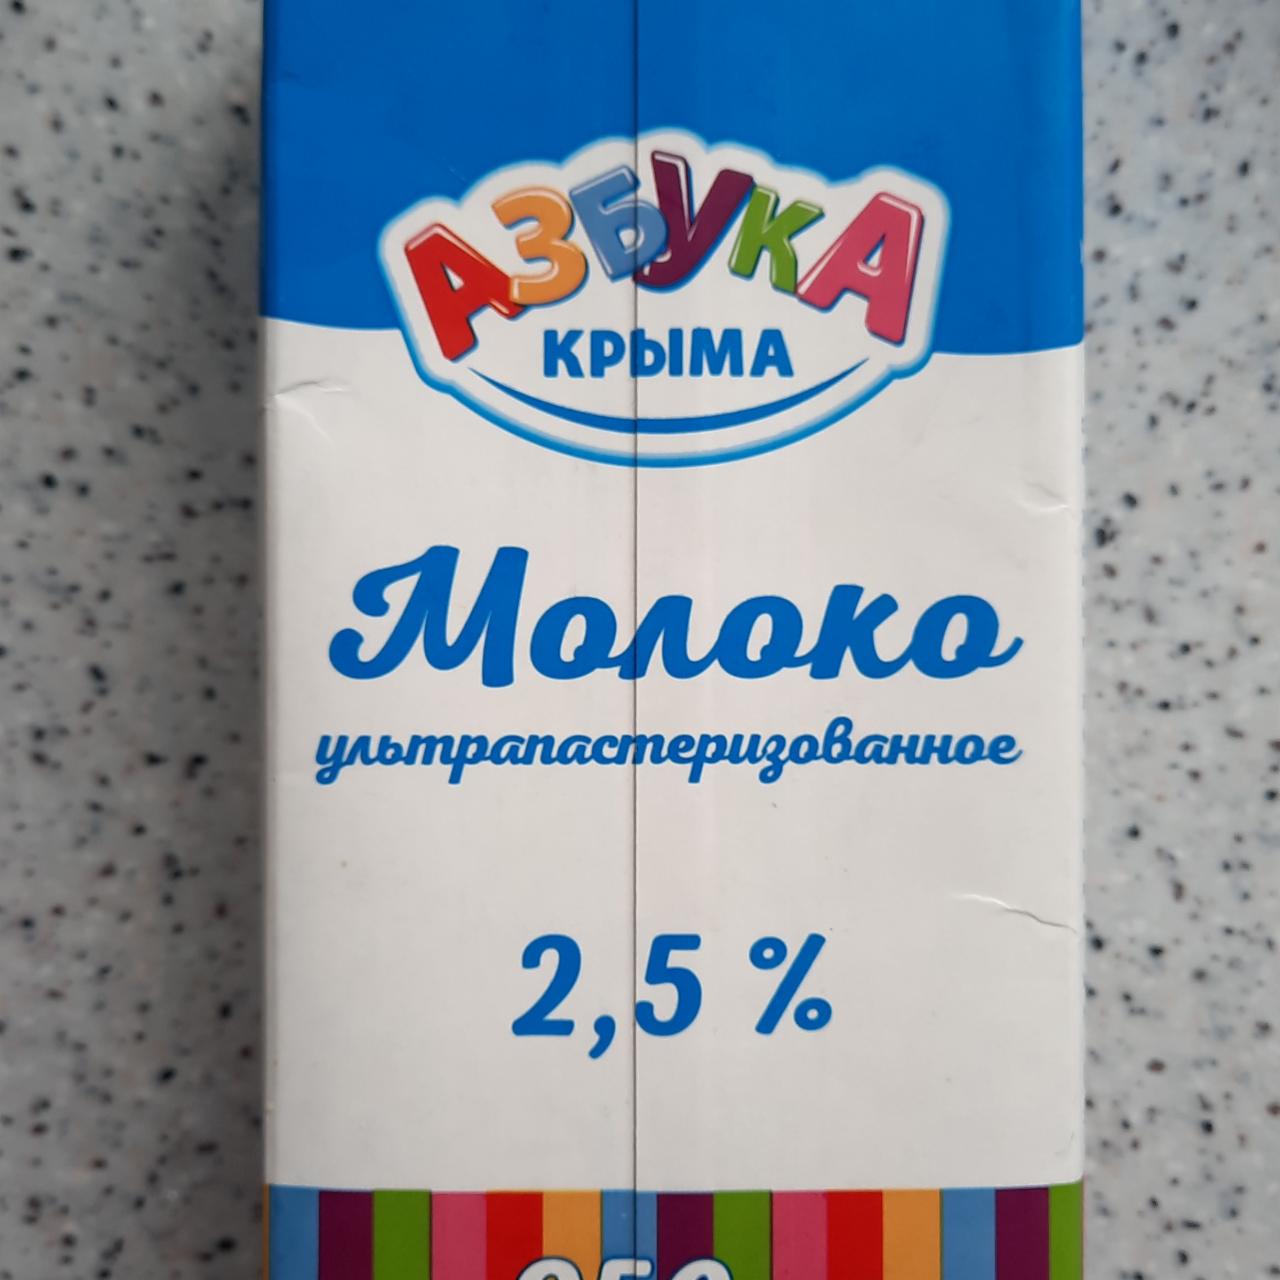 Фото - Молоко ультрапастеризованное 2.5% Азбука Крыма